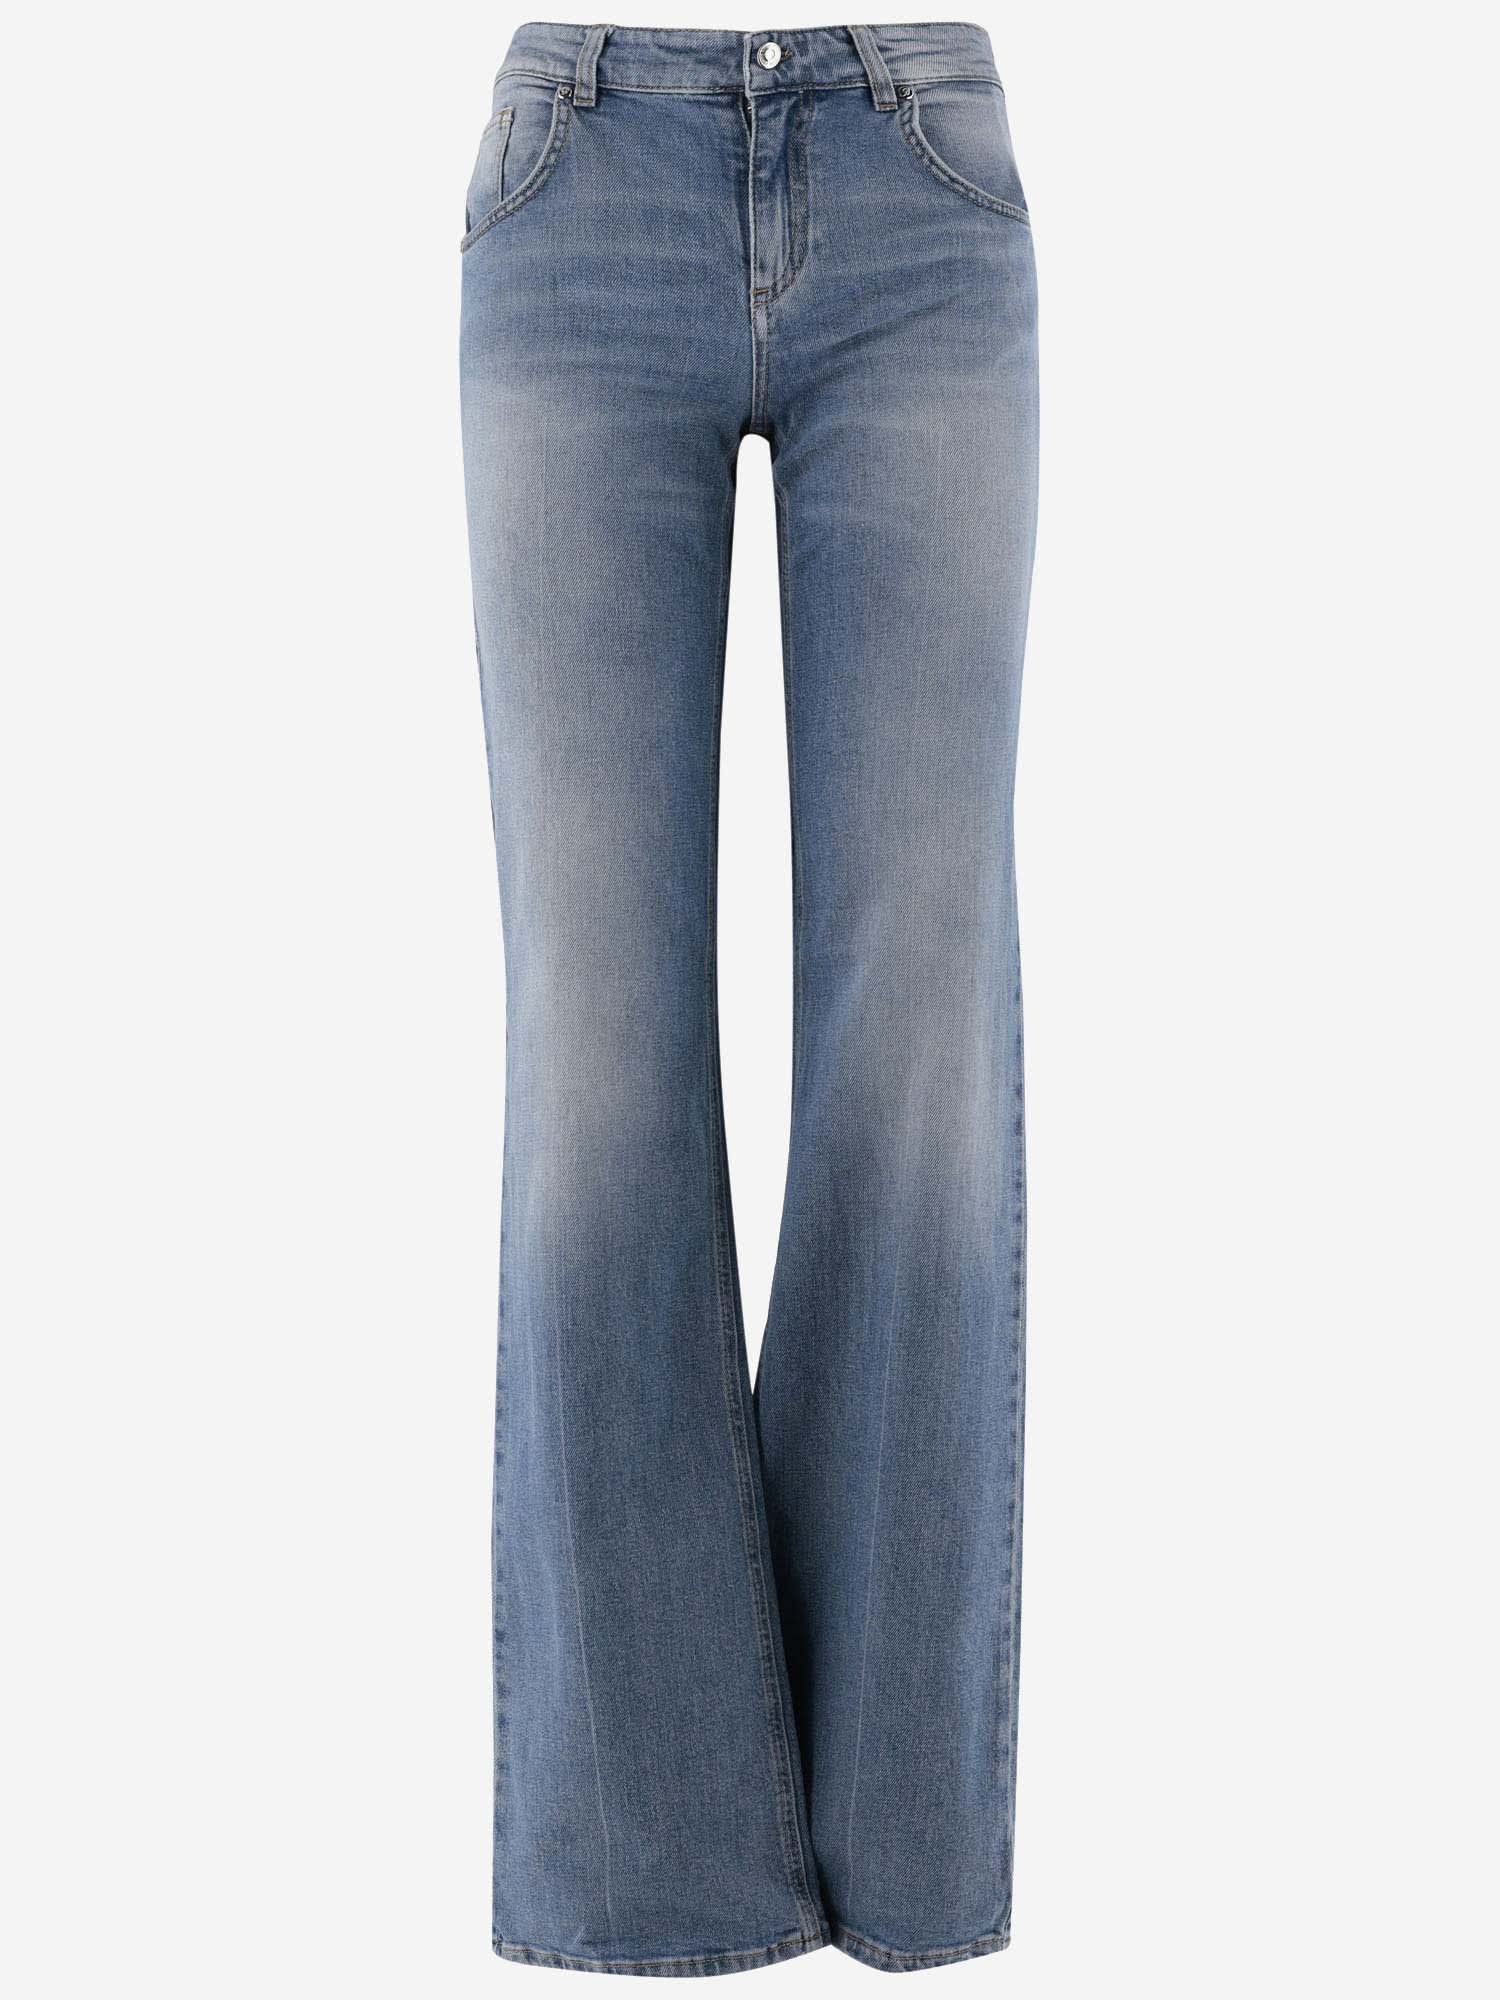 Blumarine Flared Jeans In Stretch Cotton Denim